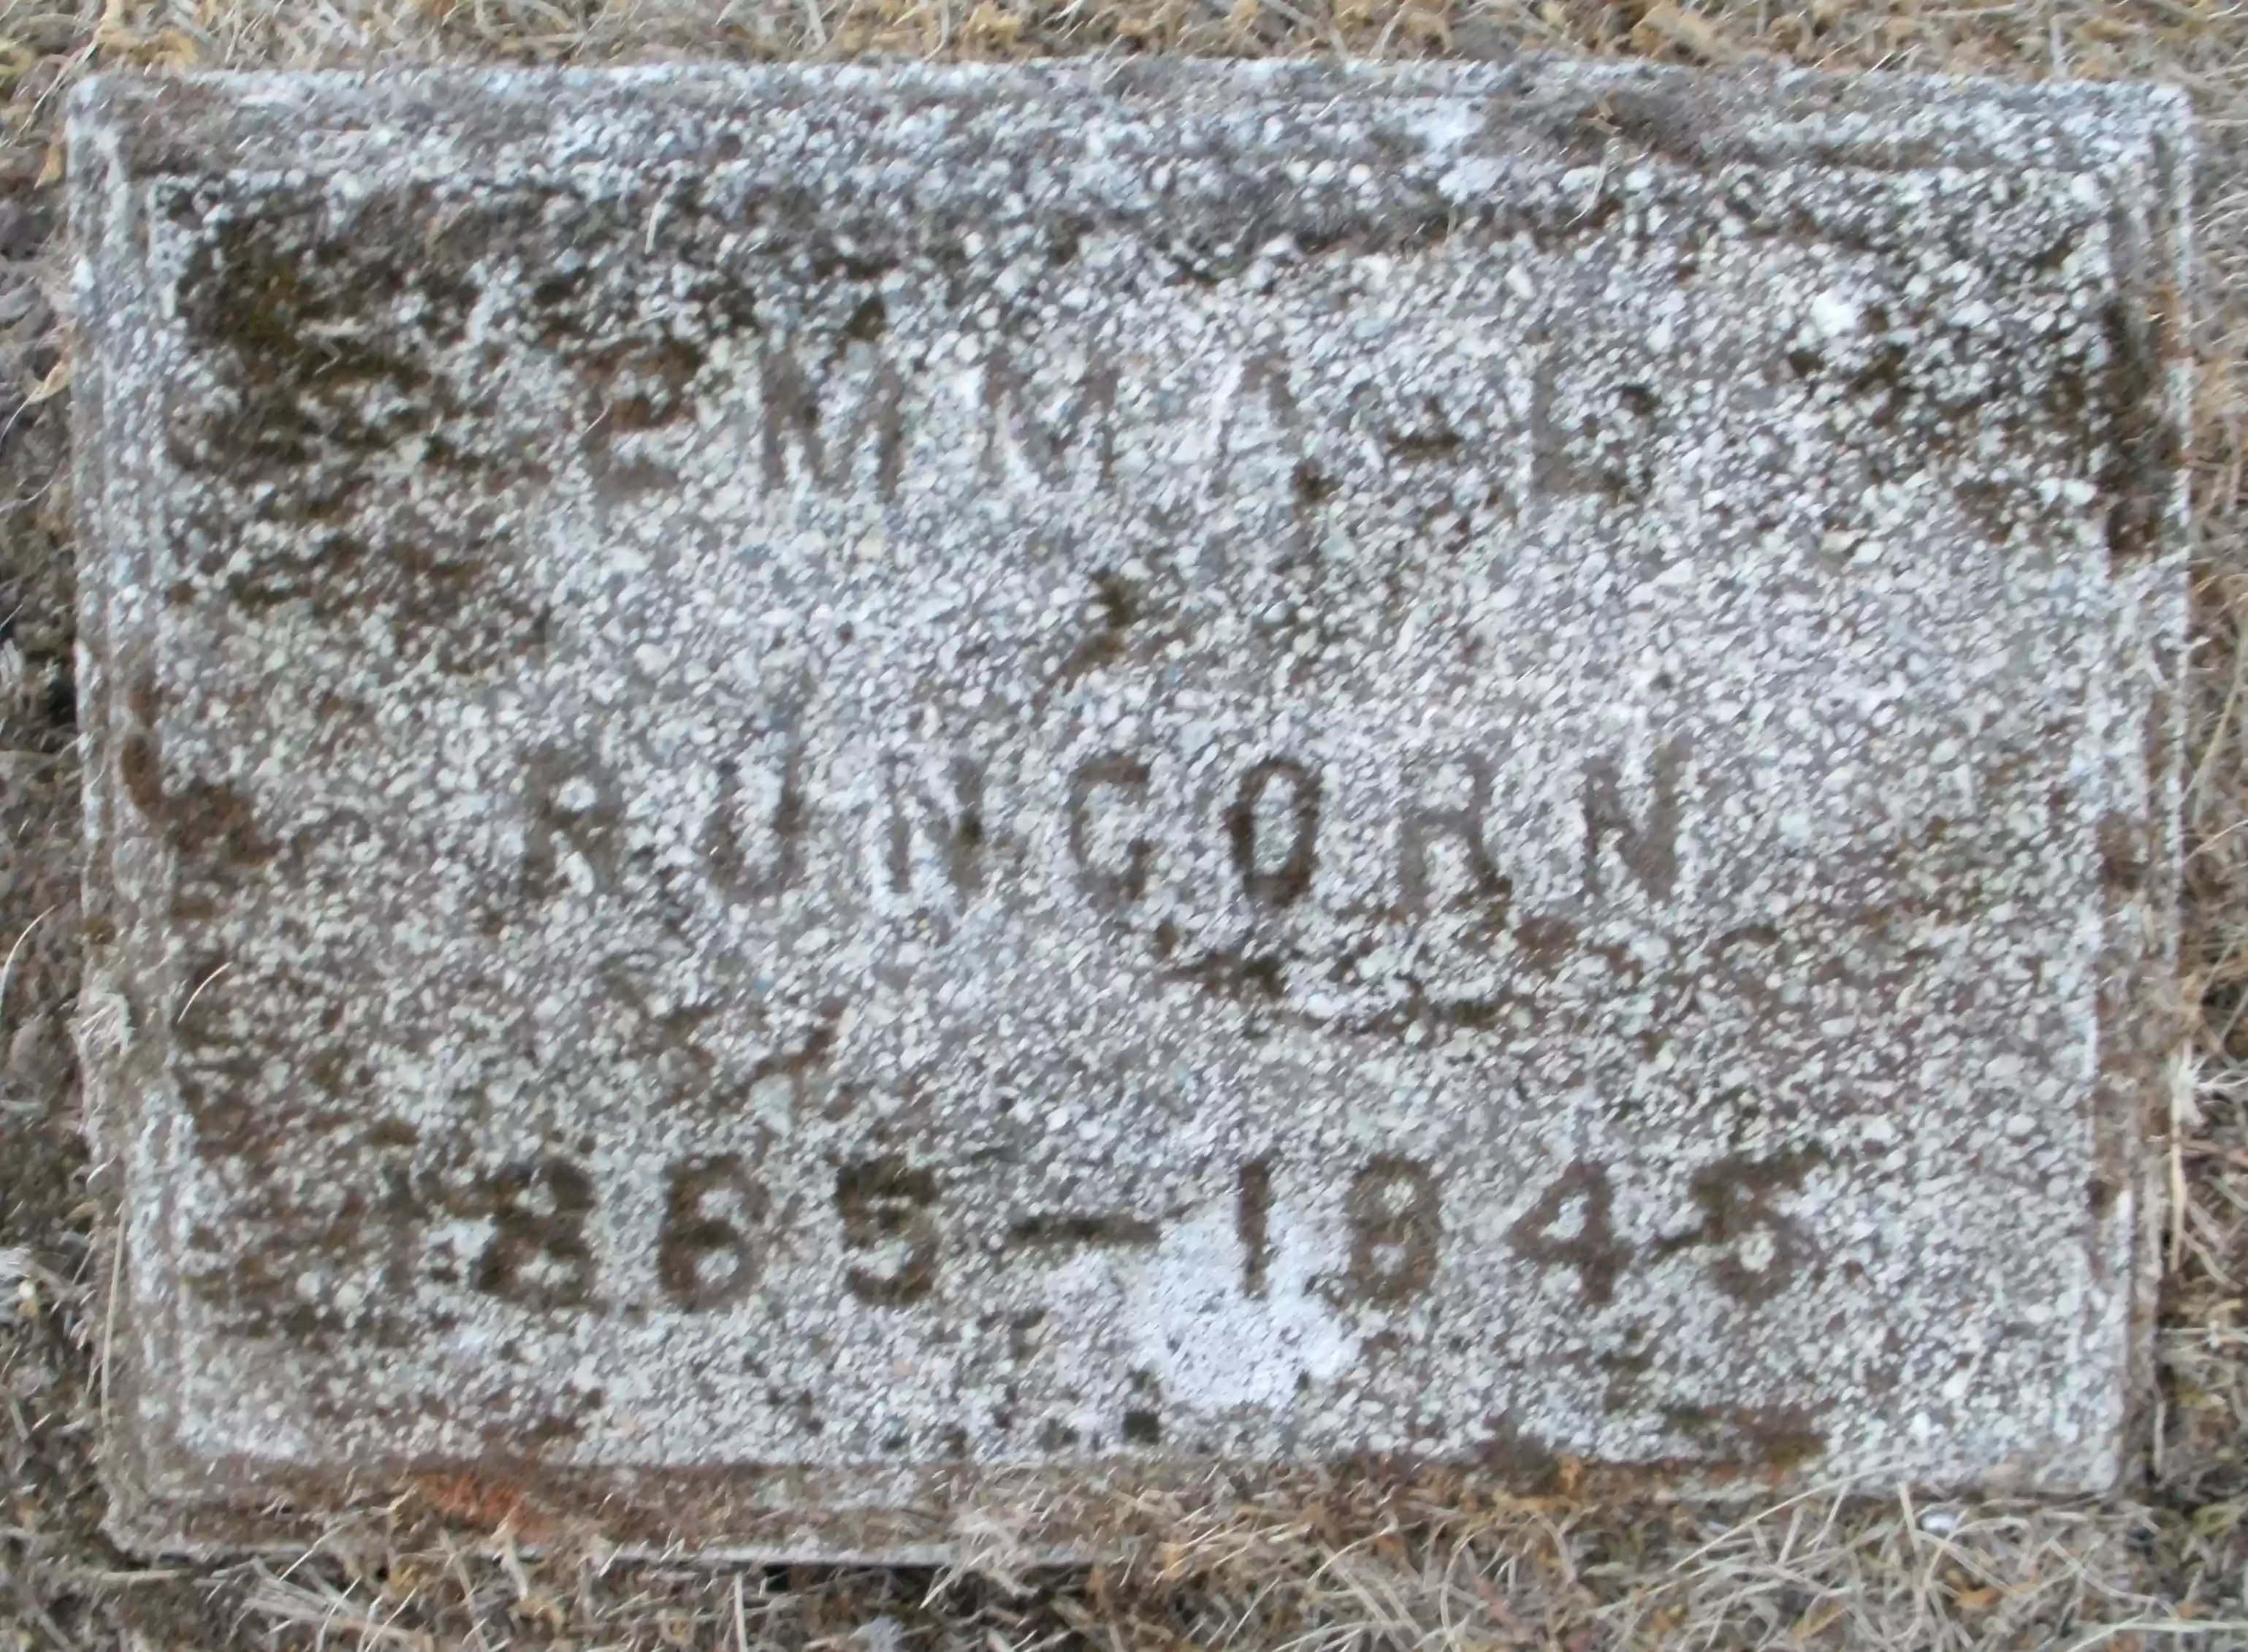 Ema Runcorn grave